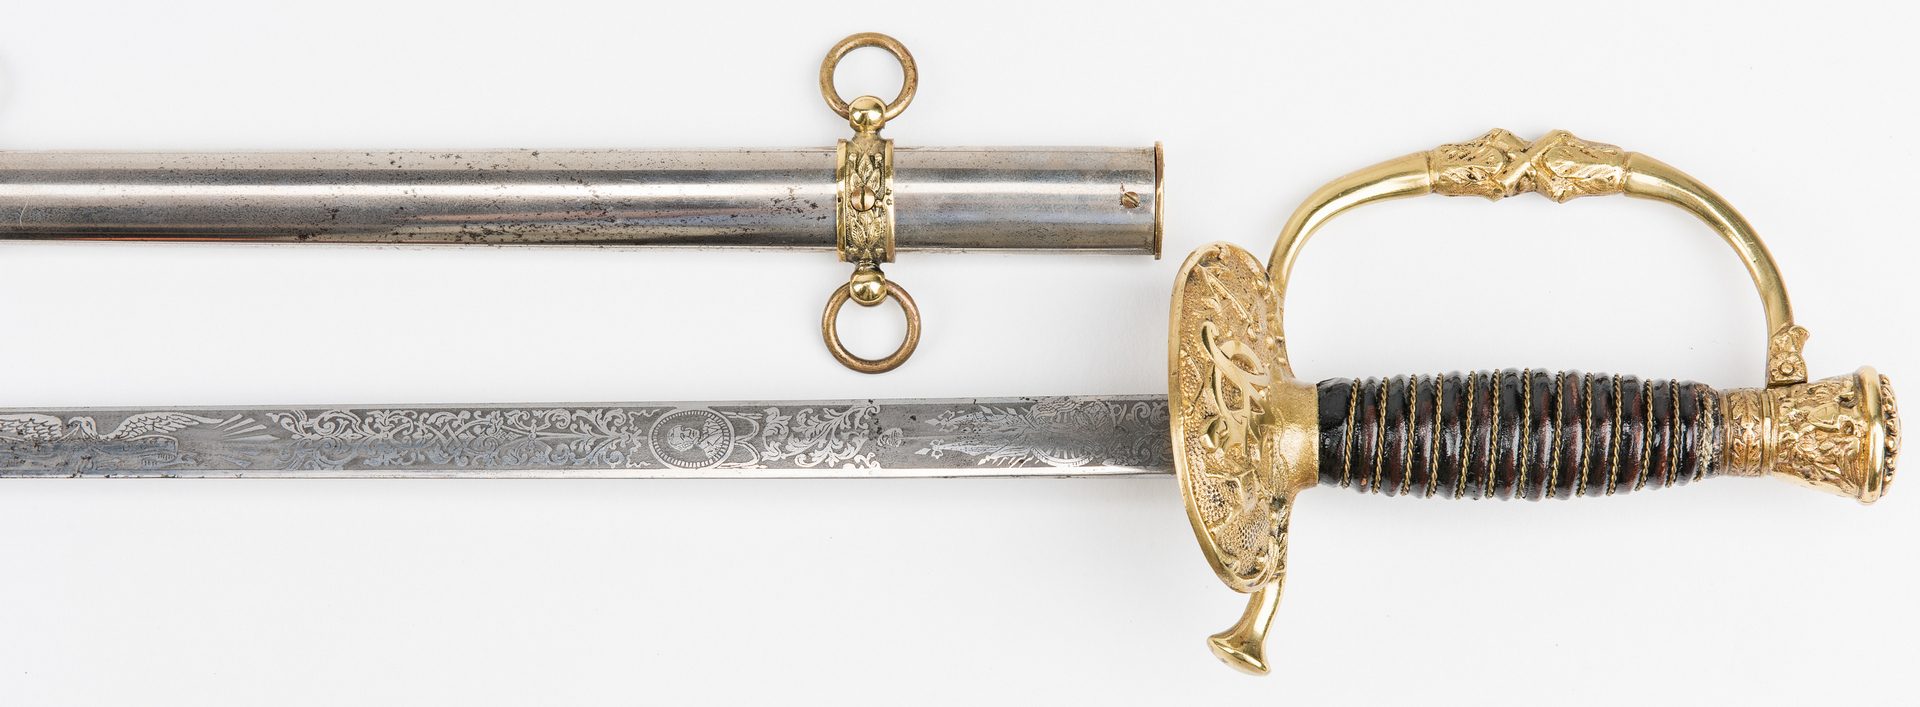 Lot 779: 2 Swords, incl. Model 1850 & G.A.R. Sword